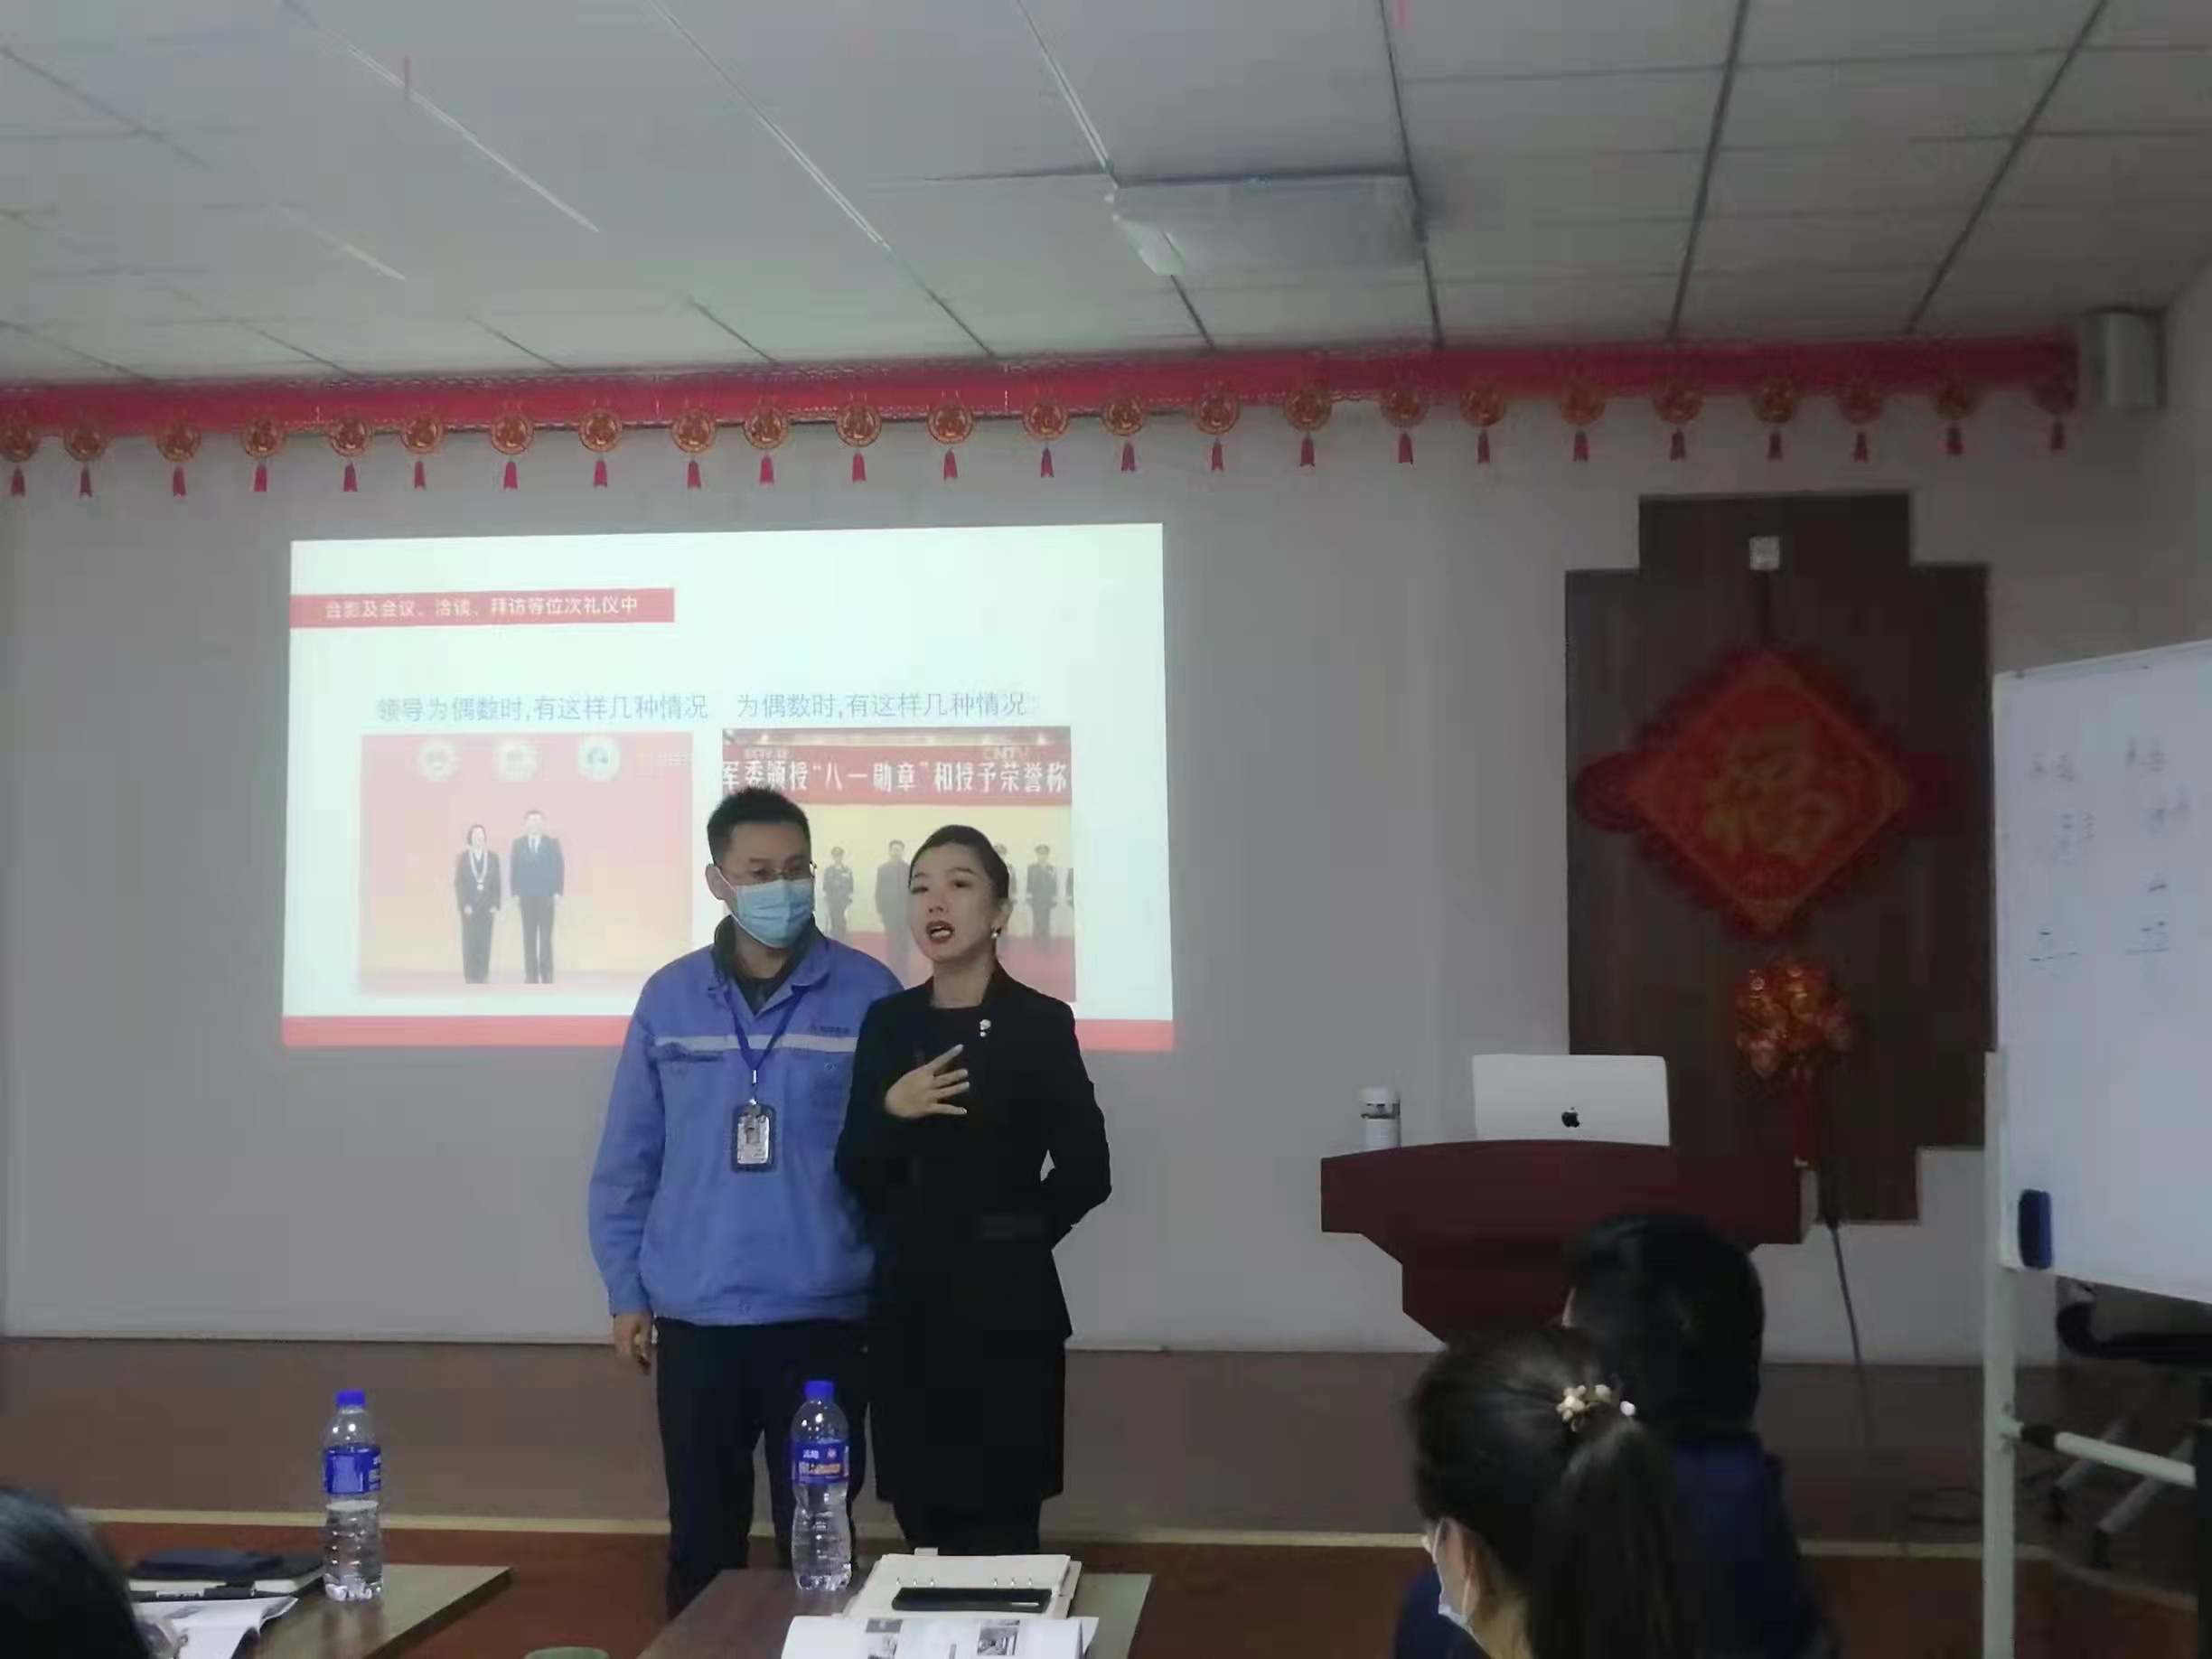 12月3日张坤（QUEEN）老师在廊坊为某企业授课《商务礼仪与酒桌文化》